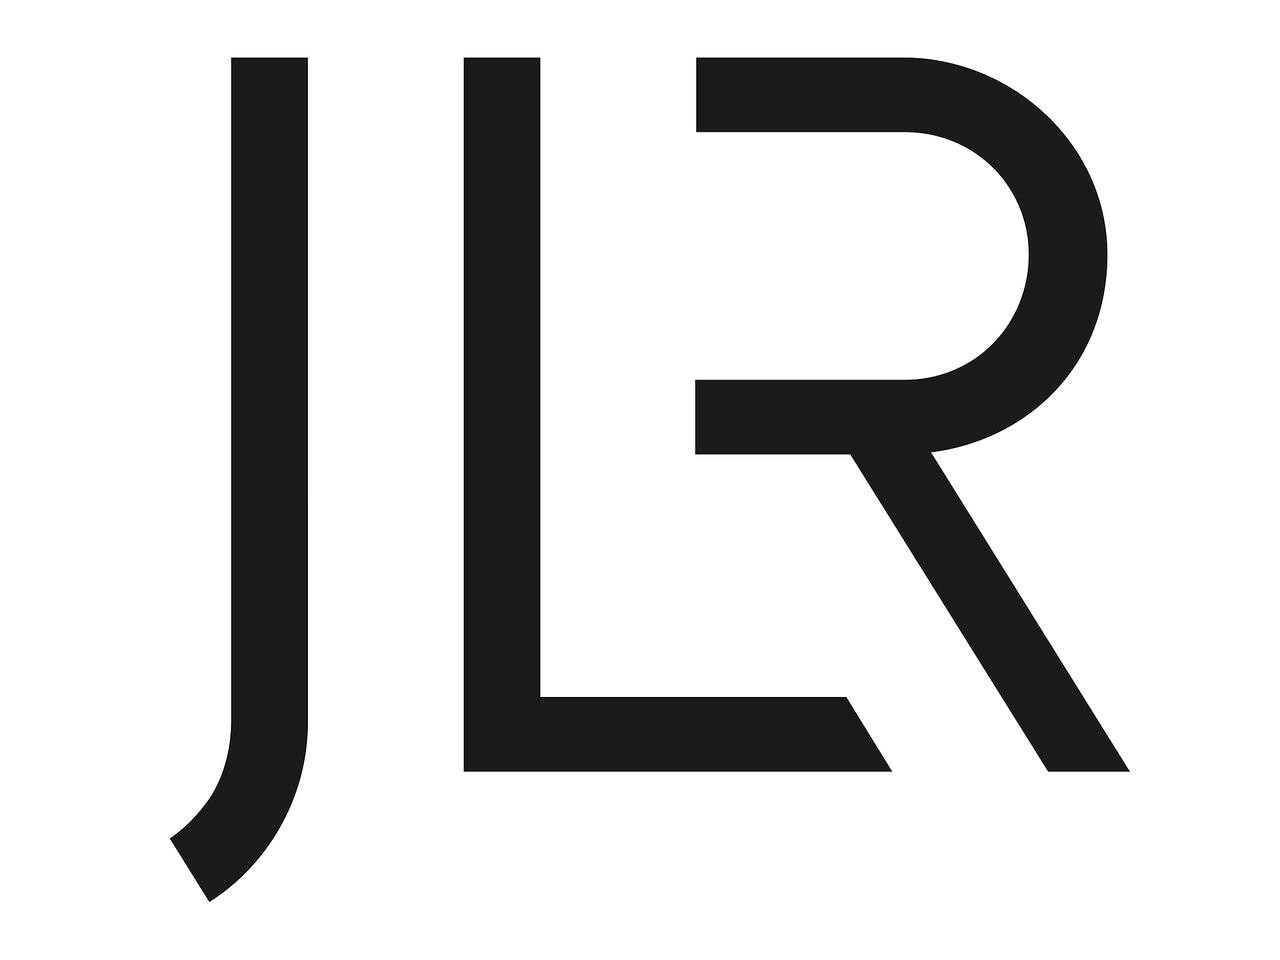 ジャガー・ランドローバーが新たなコーポレート アイデンティティを発表。今後は4つのブランドでモダンラグジュアリーのビジョンを促進